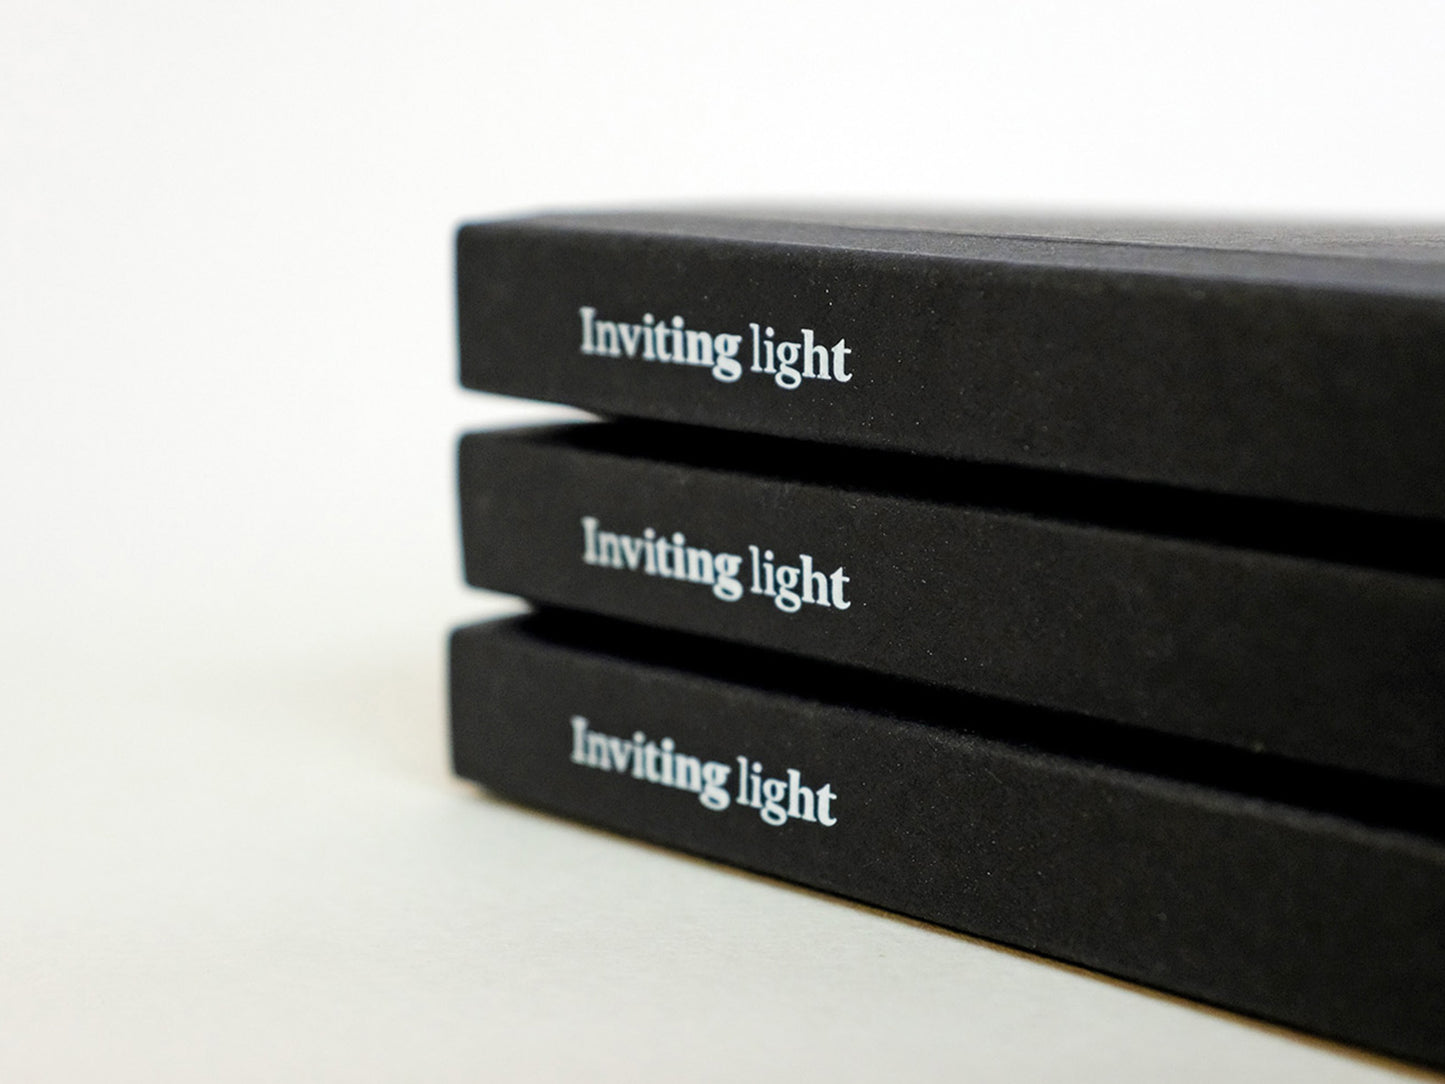 Inviting Light by Mark Luke Grant